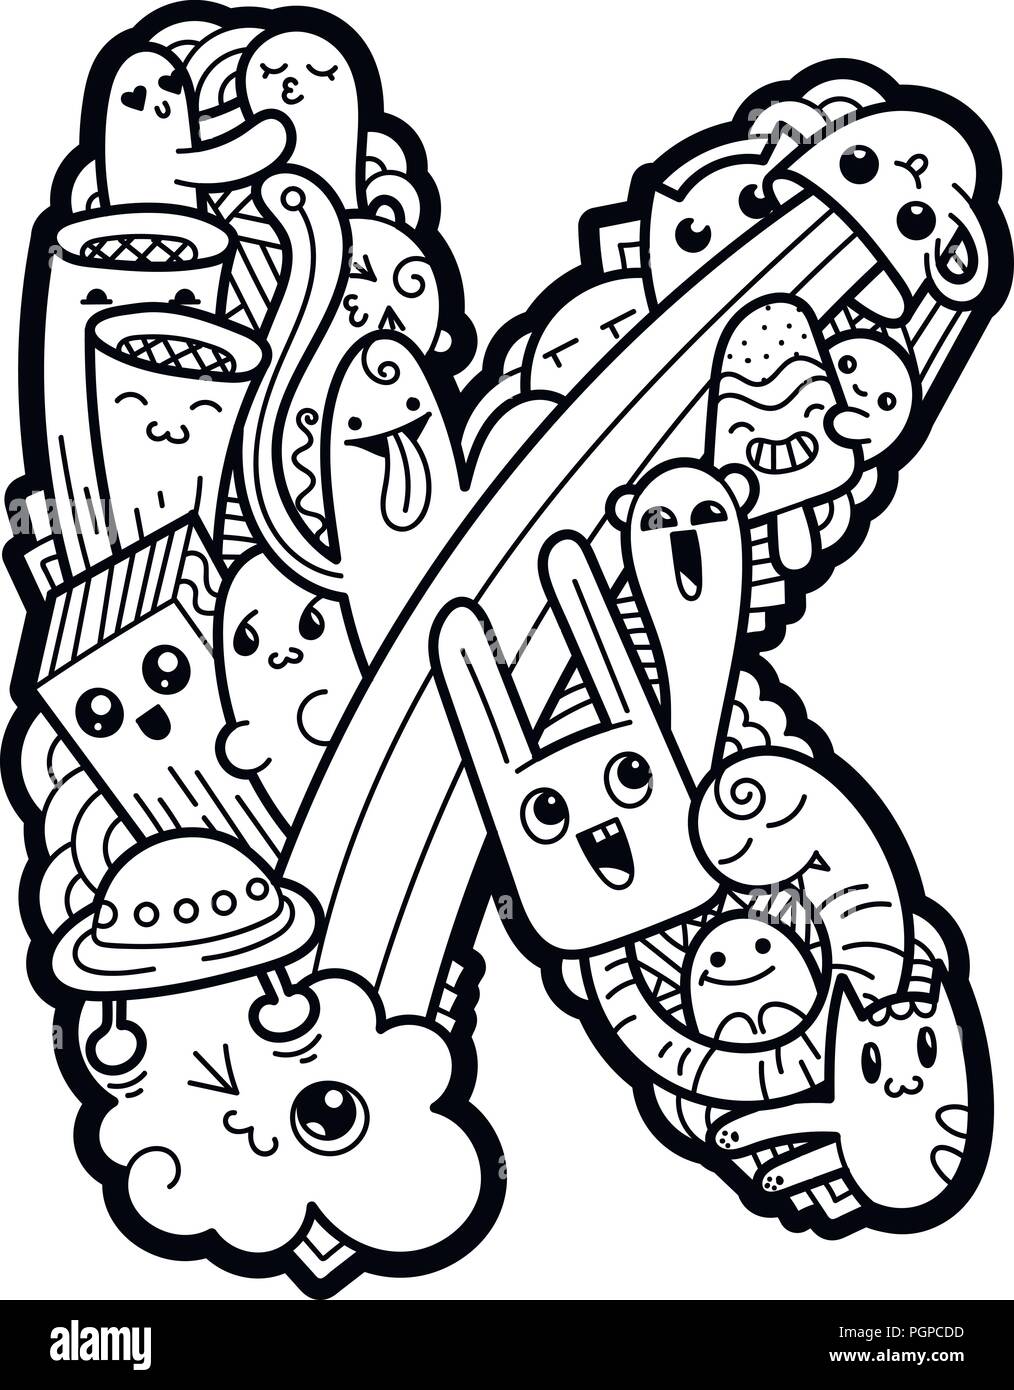 Lettre K. Hand drawn doodled kids lettre K. Mignon monstred lettrage, des symboles de texte. Illustration vectorielle pour le web, le design, la décoration, l'éducation, s'imprime, Illustration de Vecteur